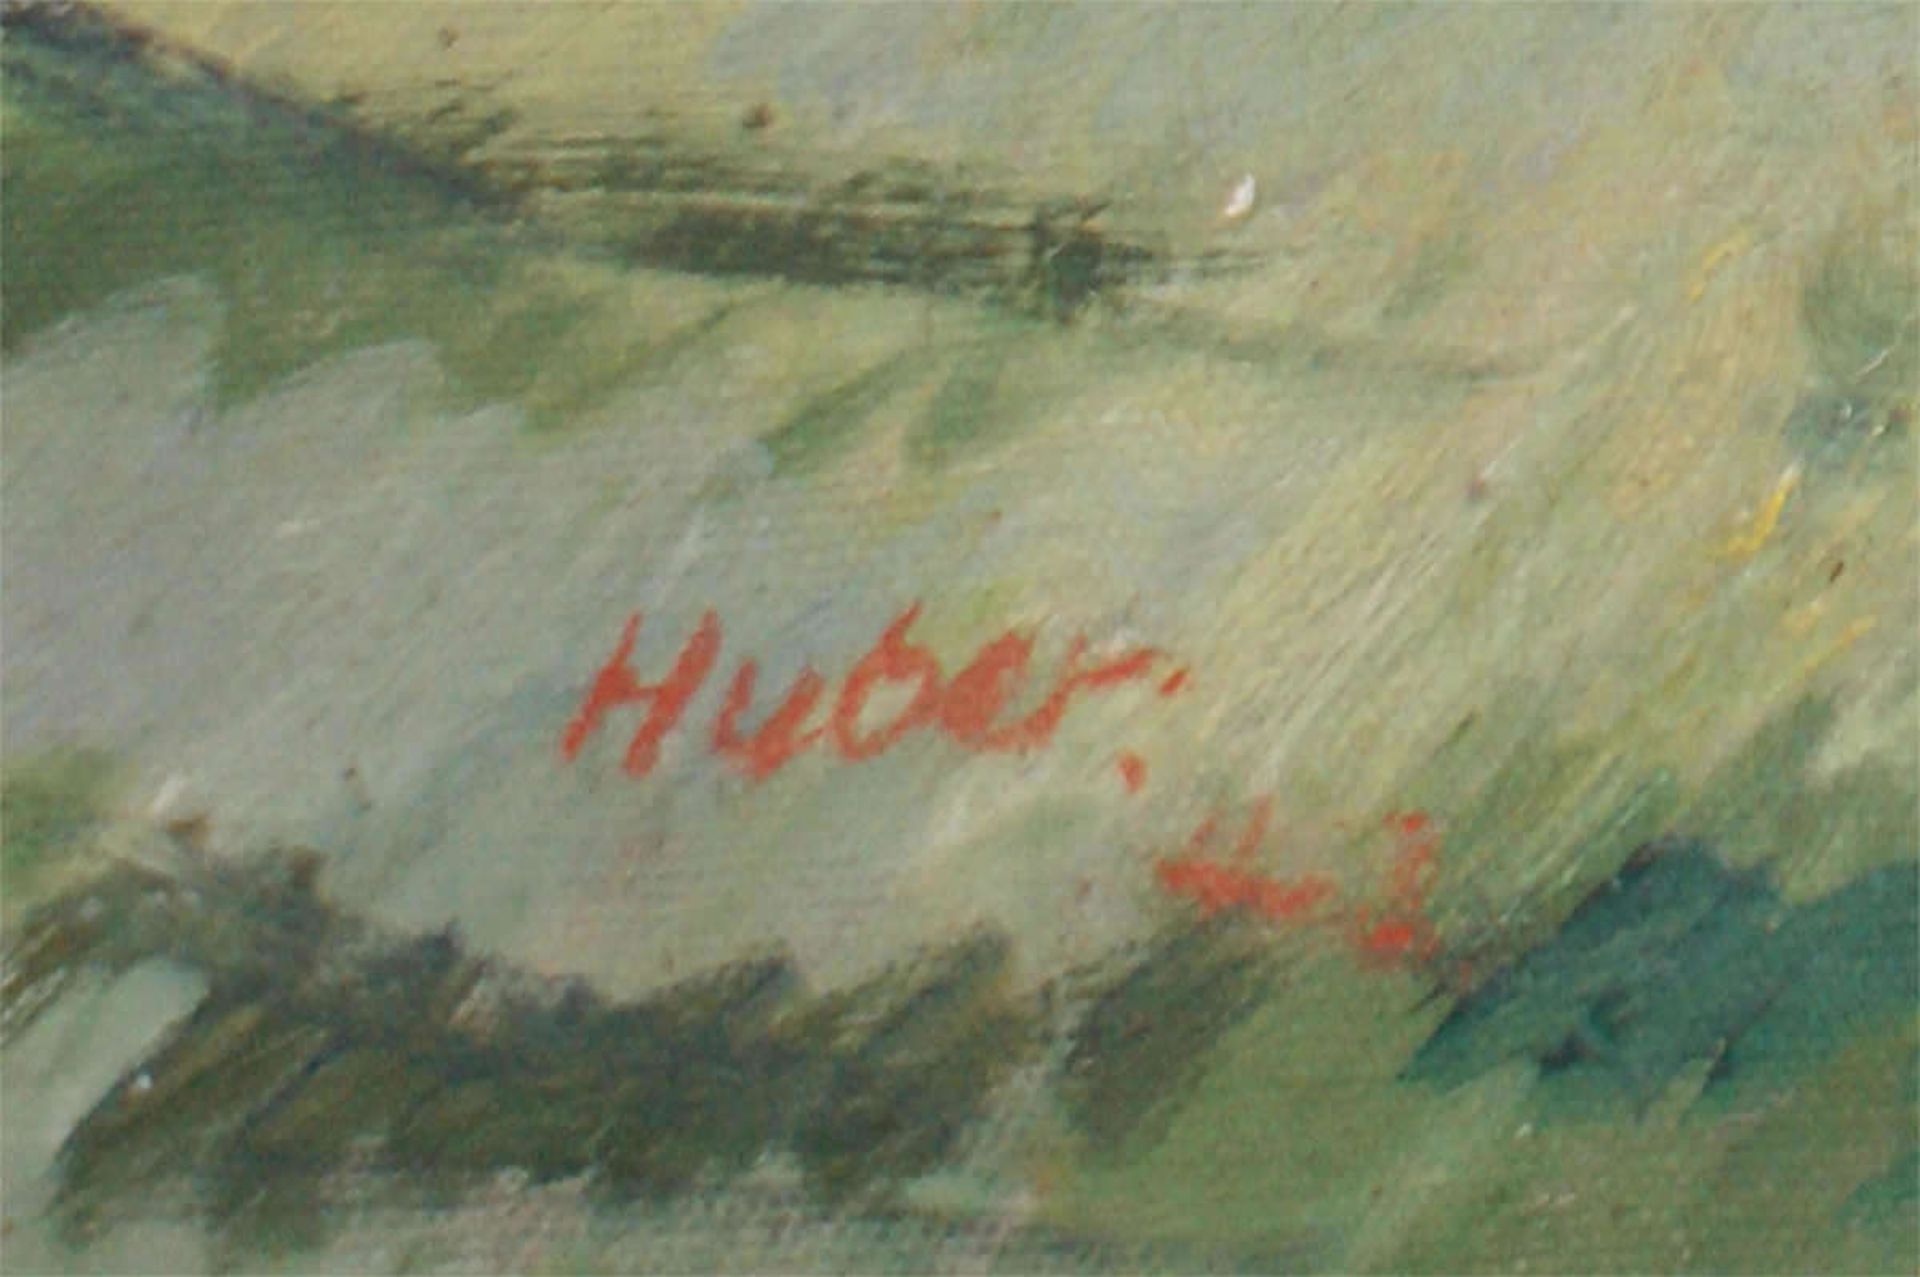 wohl Ernst Huber (1895-1960), Ölgemälde auf Leinwand, links Signatur Huber "Gewitterstimmung", - Bild 3 aus 3